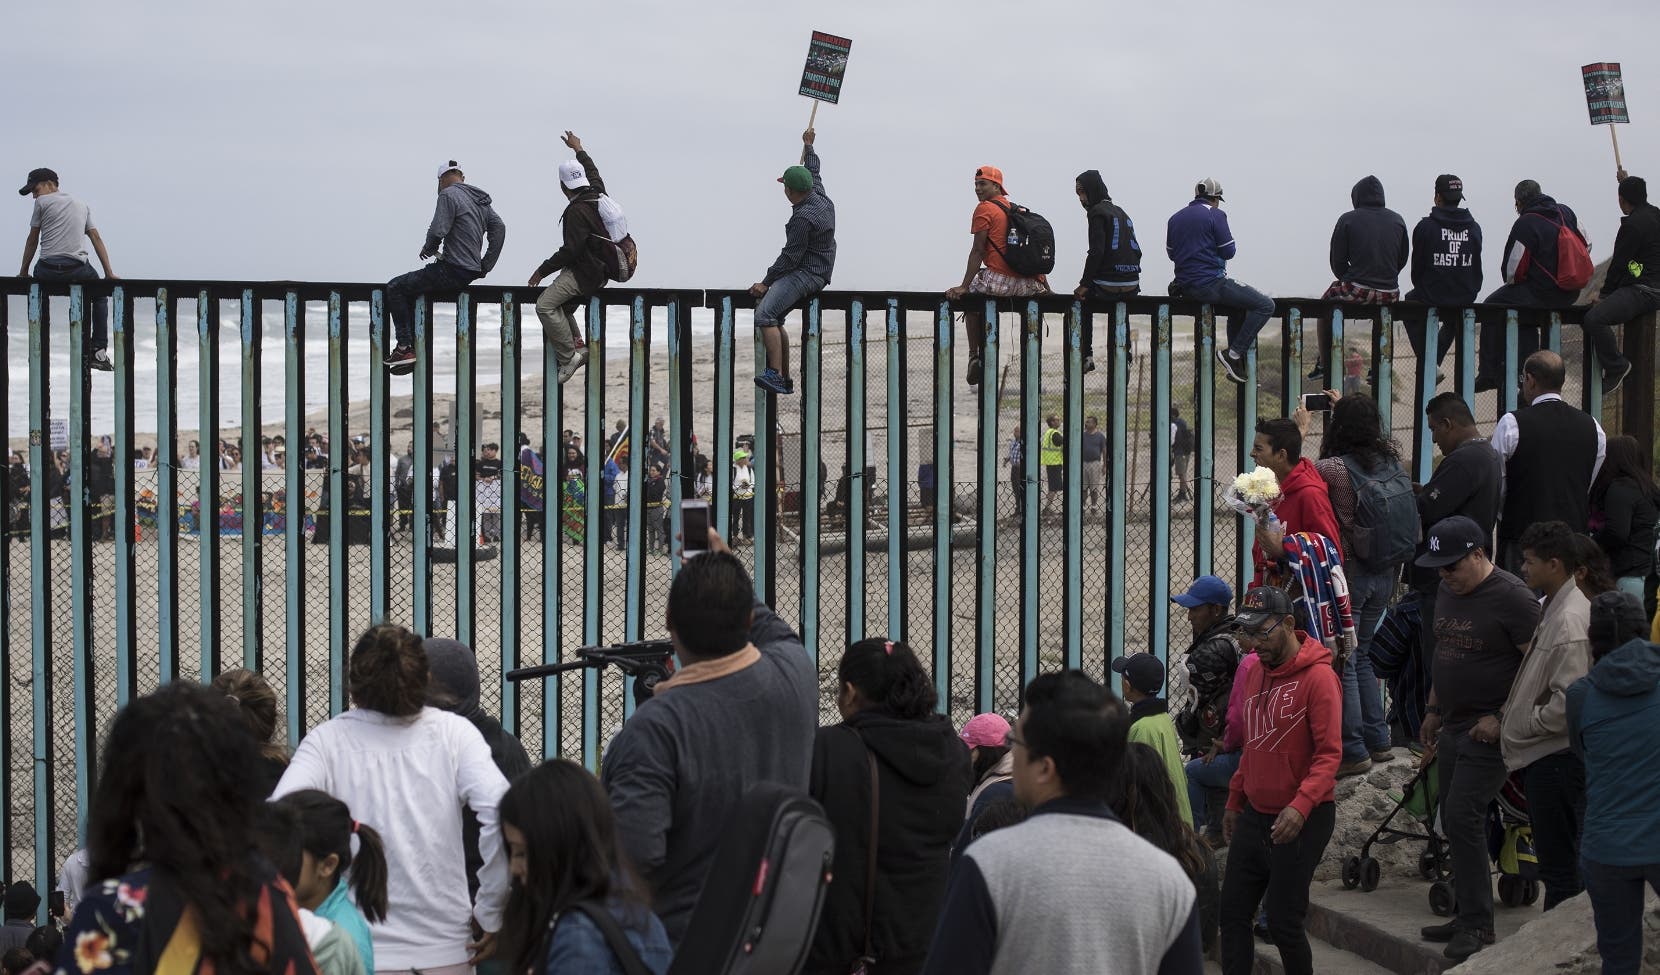 Una parte de los migrantes intentÃ³ cruzar de manera ilegal la frontera de Estados Unidos. Fueron atacados con gases.